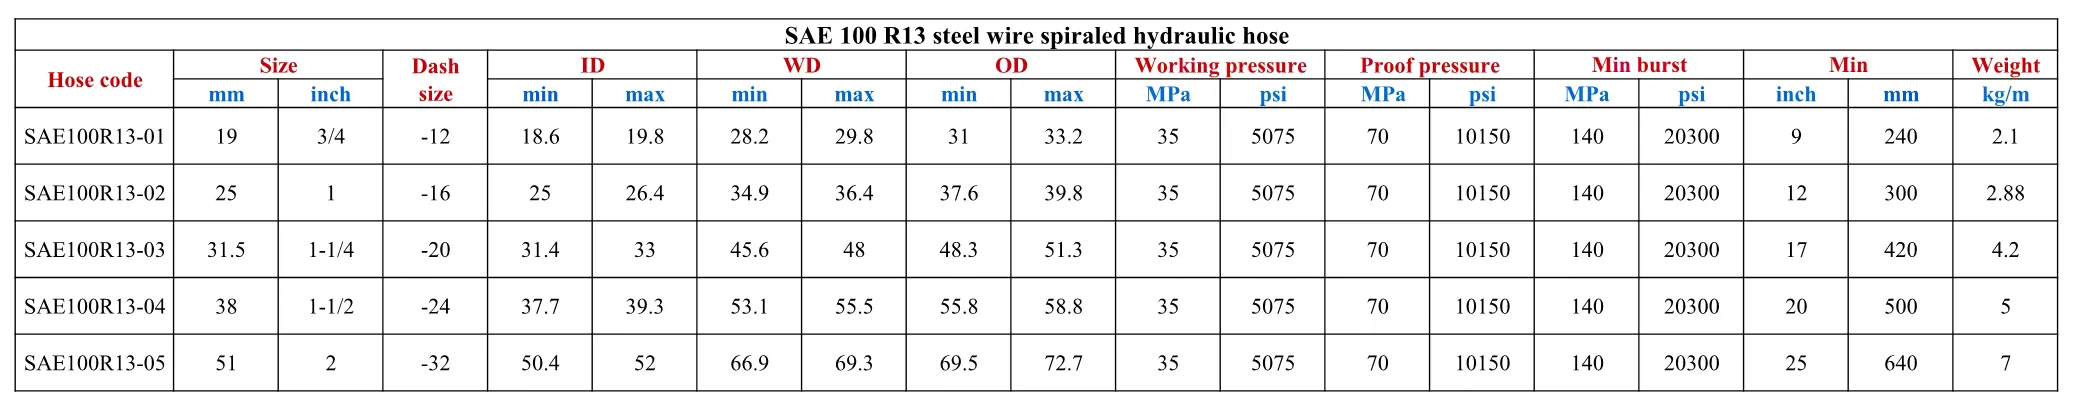 خرطوم مطاطي هيدروليكي Sprial صناعة En856/100 R13 خرطوم خاص بالأسلاك الفولاذية 1 "2"